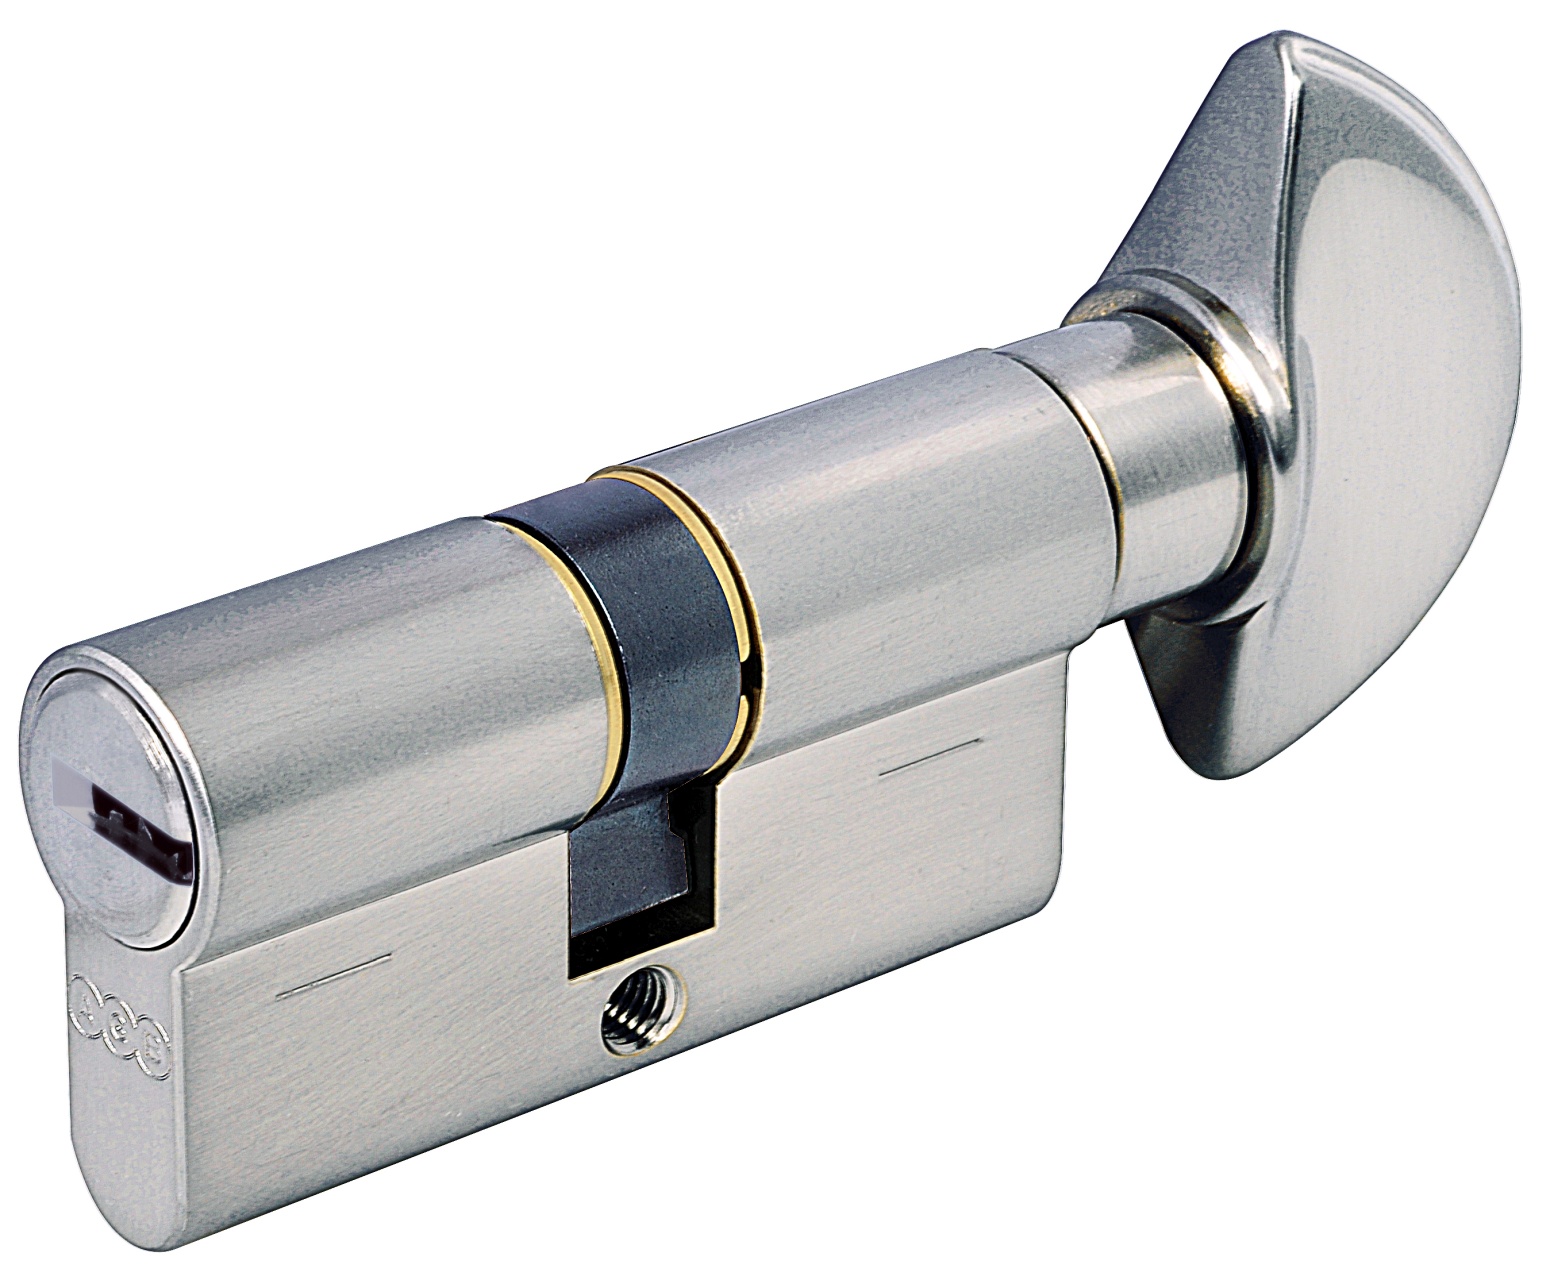 AGB -  Cilindro SCUDO 5000 PS frizionato anti bamping con chiave e pomolo - col. LUCIDO VERNICIATO - lunghezza 85 - misura P-35-10-40